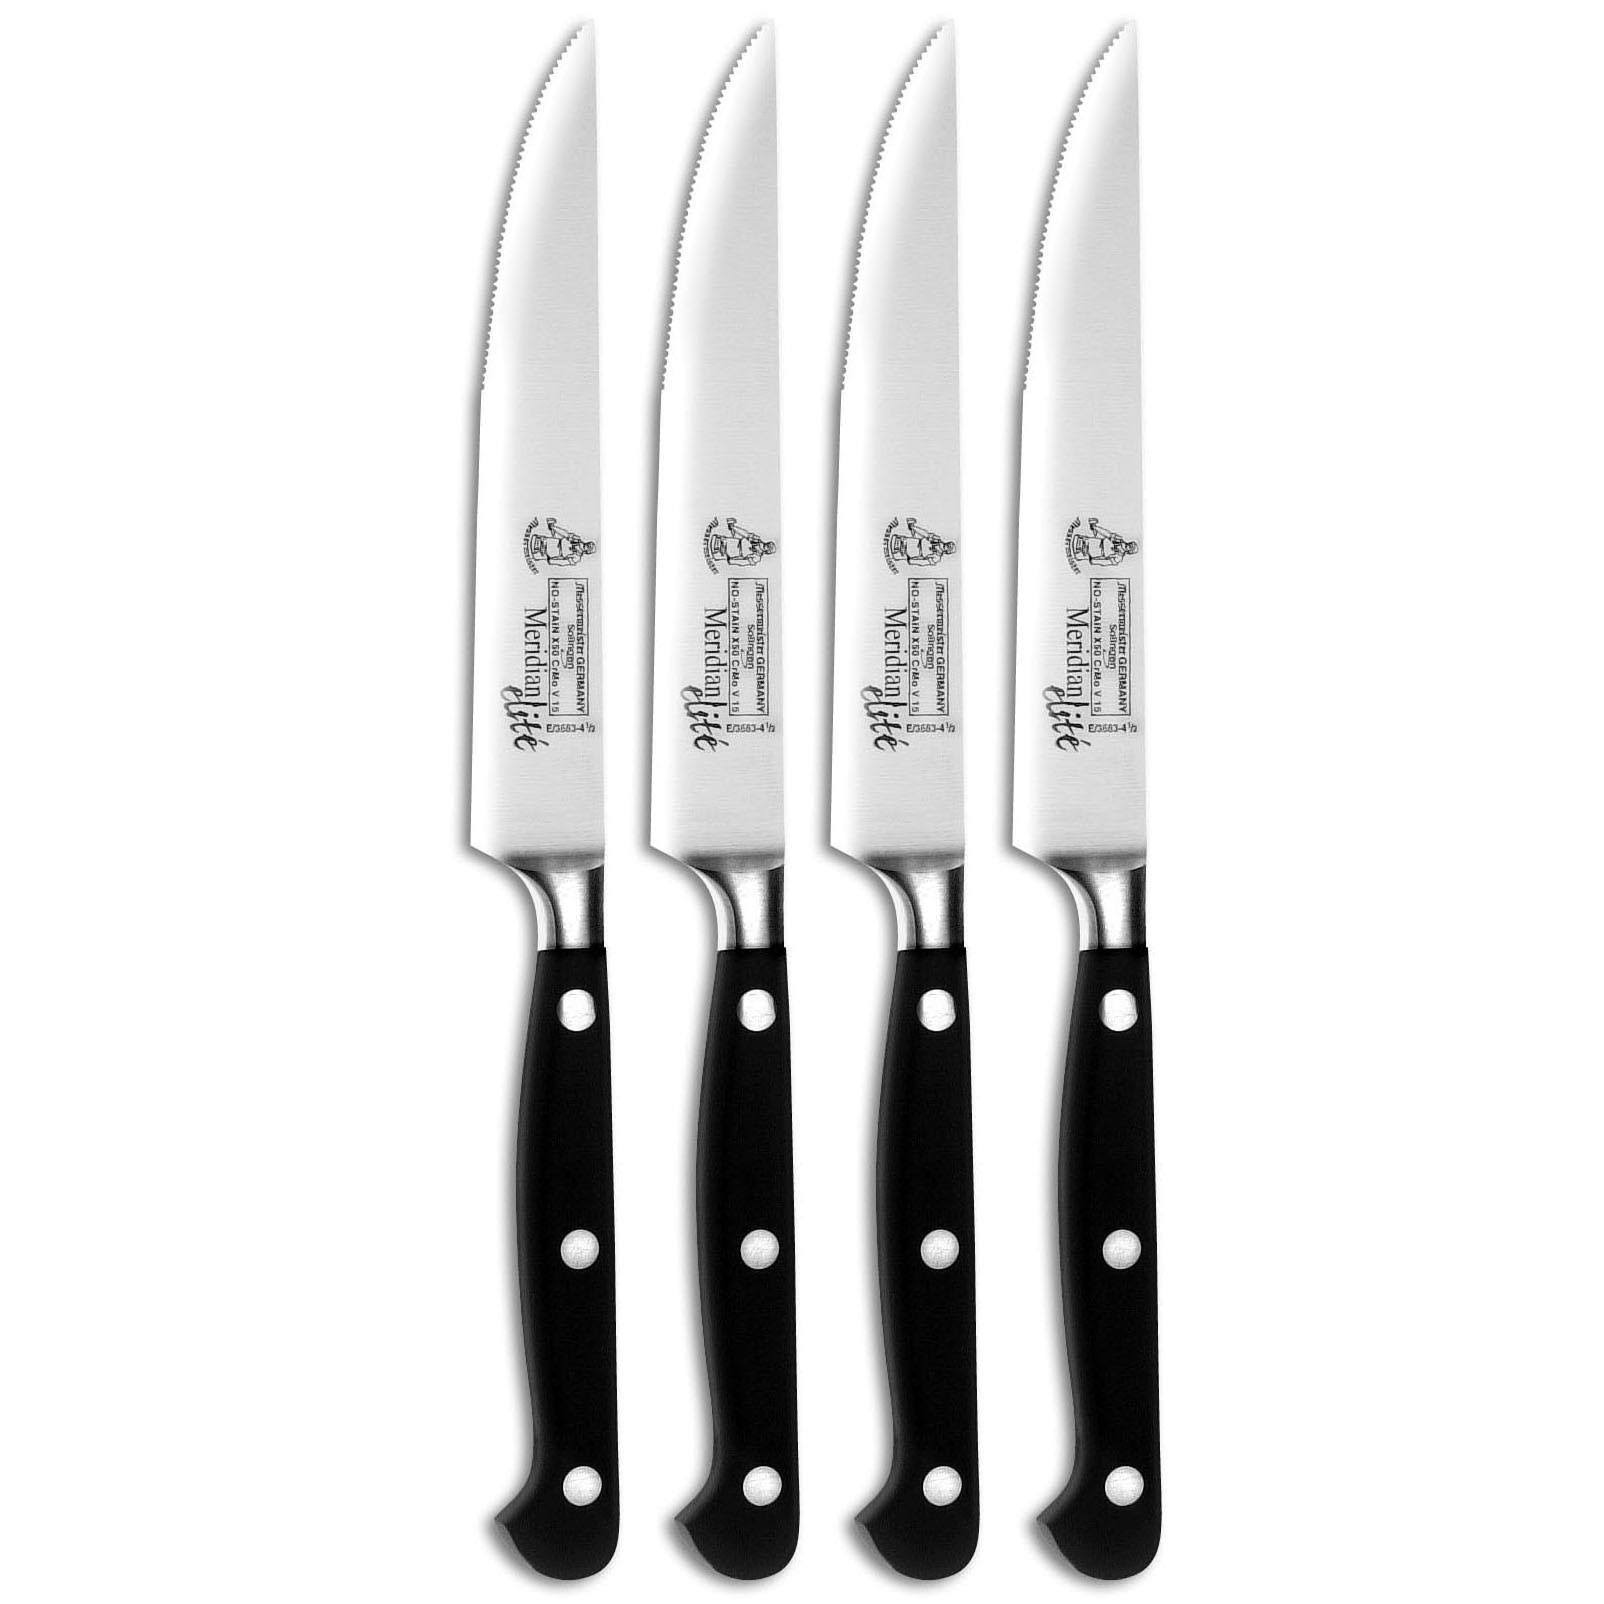 Messermeister Meridian Elite Multi-Edge 4 Steak Knife Set